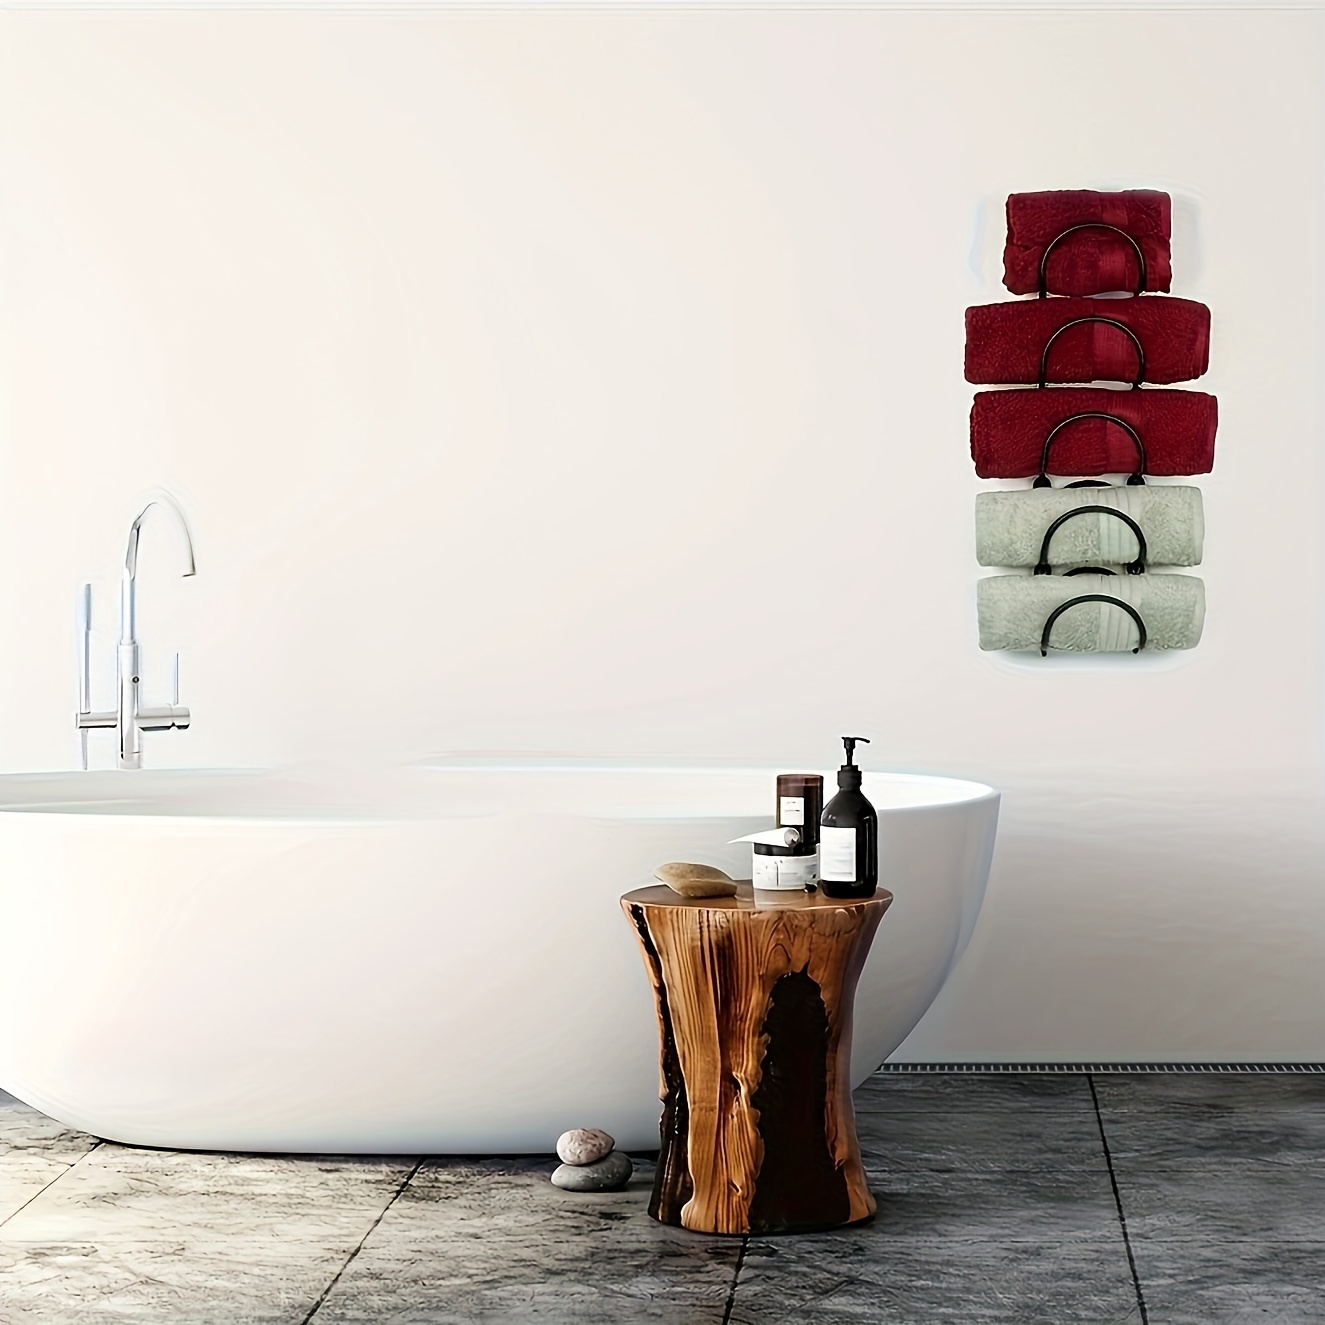 mDesign Toallero ajustable de metal para ducha y baño, colgador de barra de  3 niveles con 2 ganchos para baño, toalla para colgar, manta, paños de